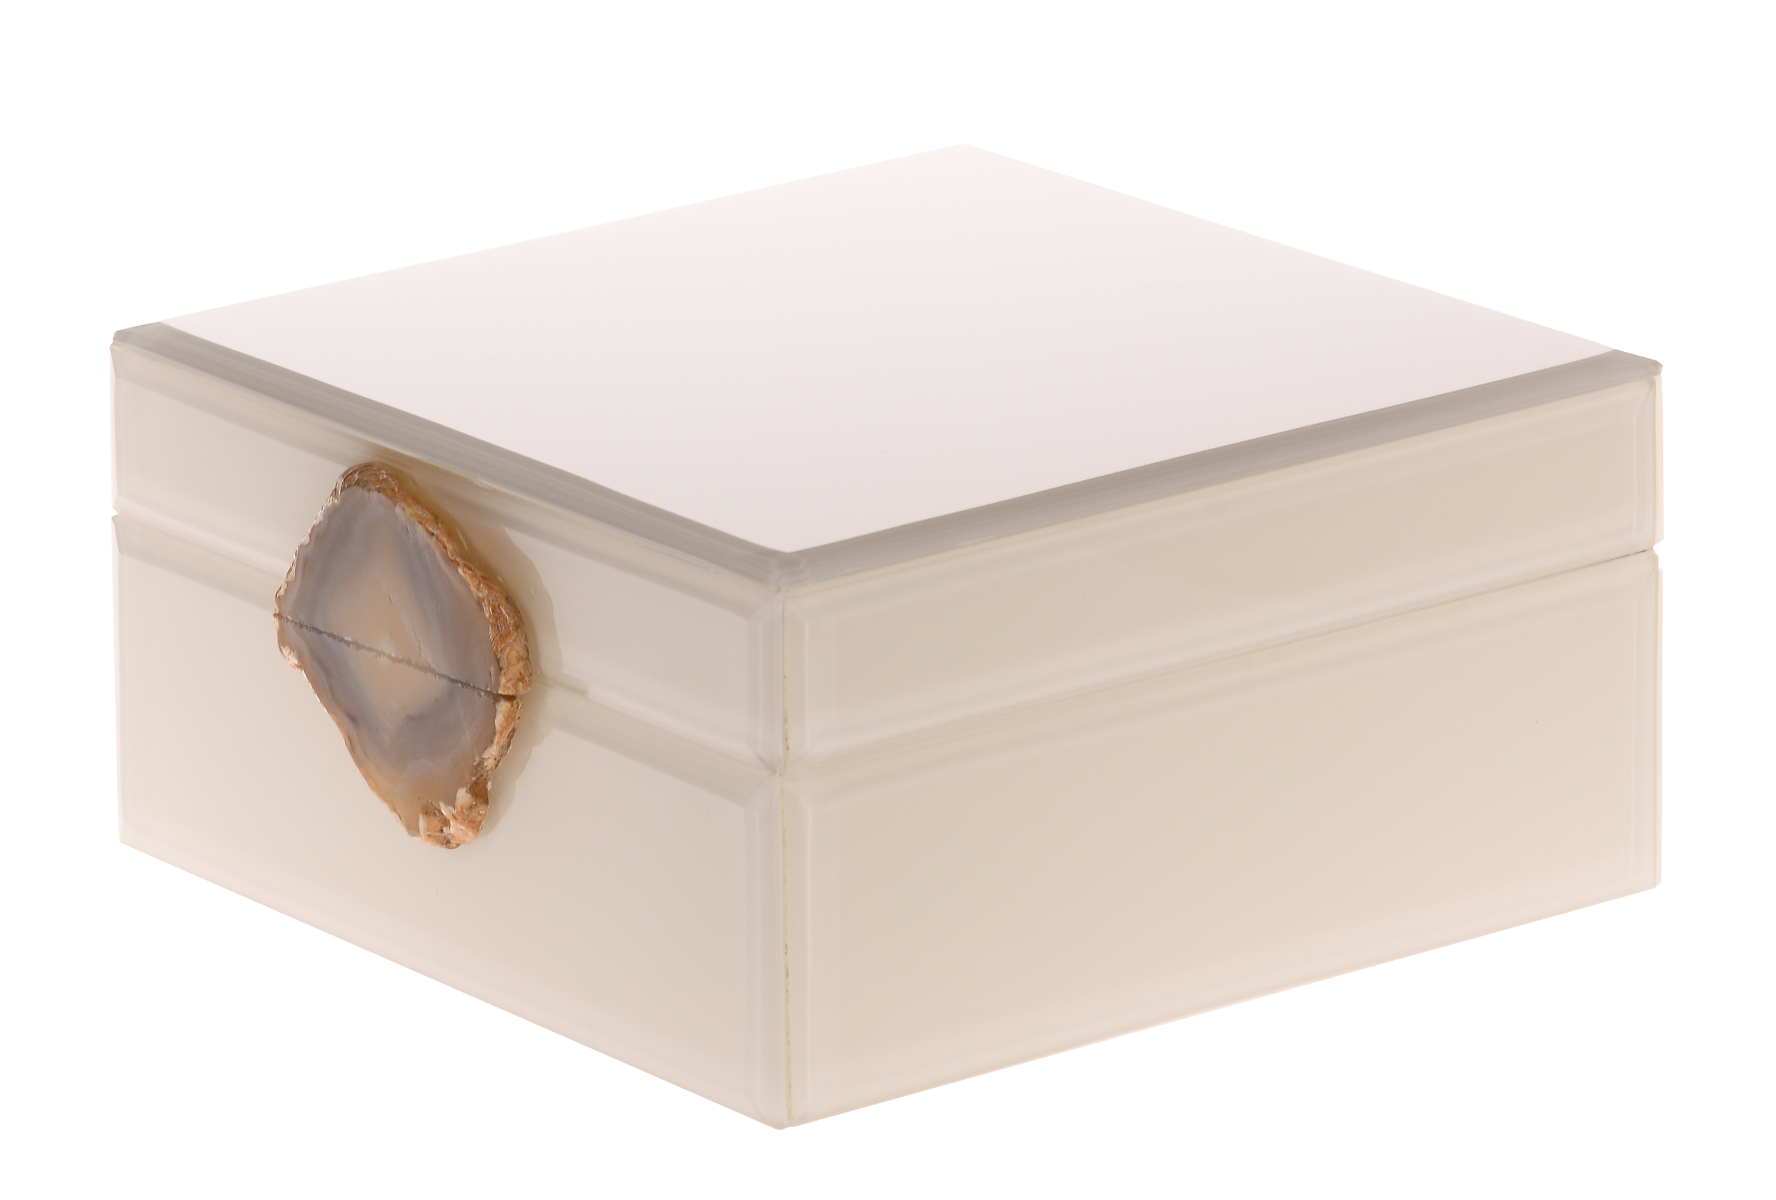 Pudełko ozdobne Cofanetto z uchwytem z agatu 16x16x7,5cm